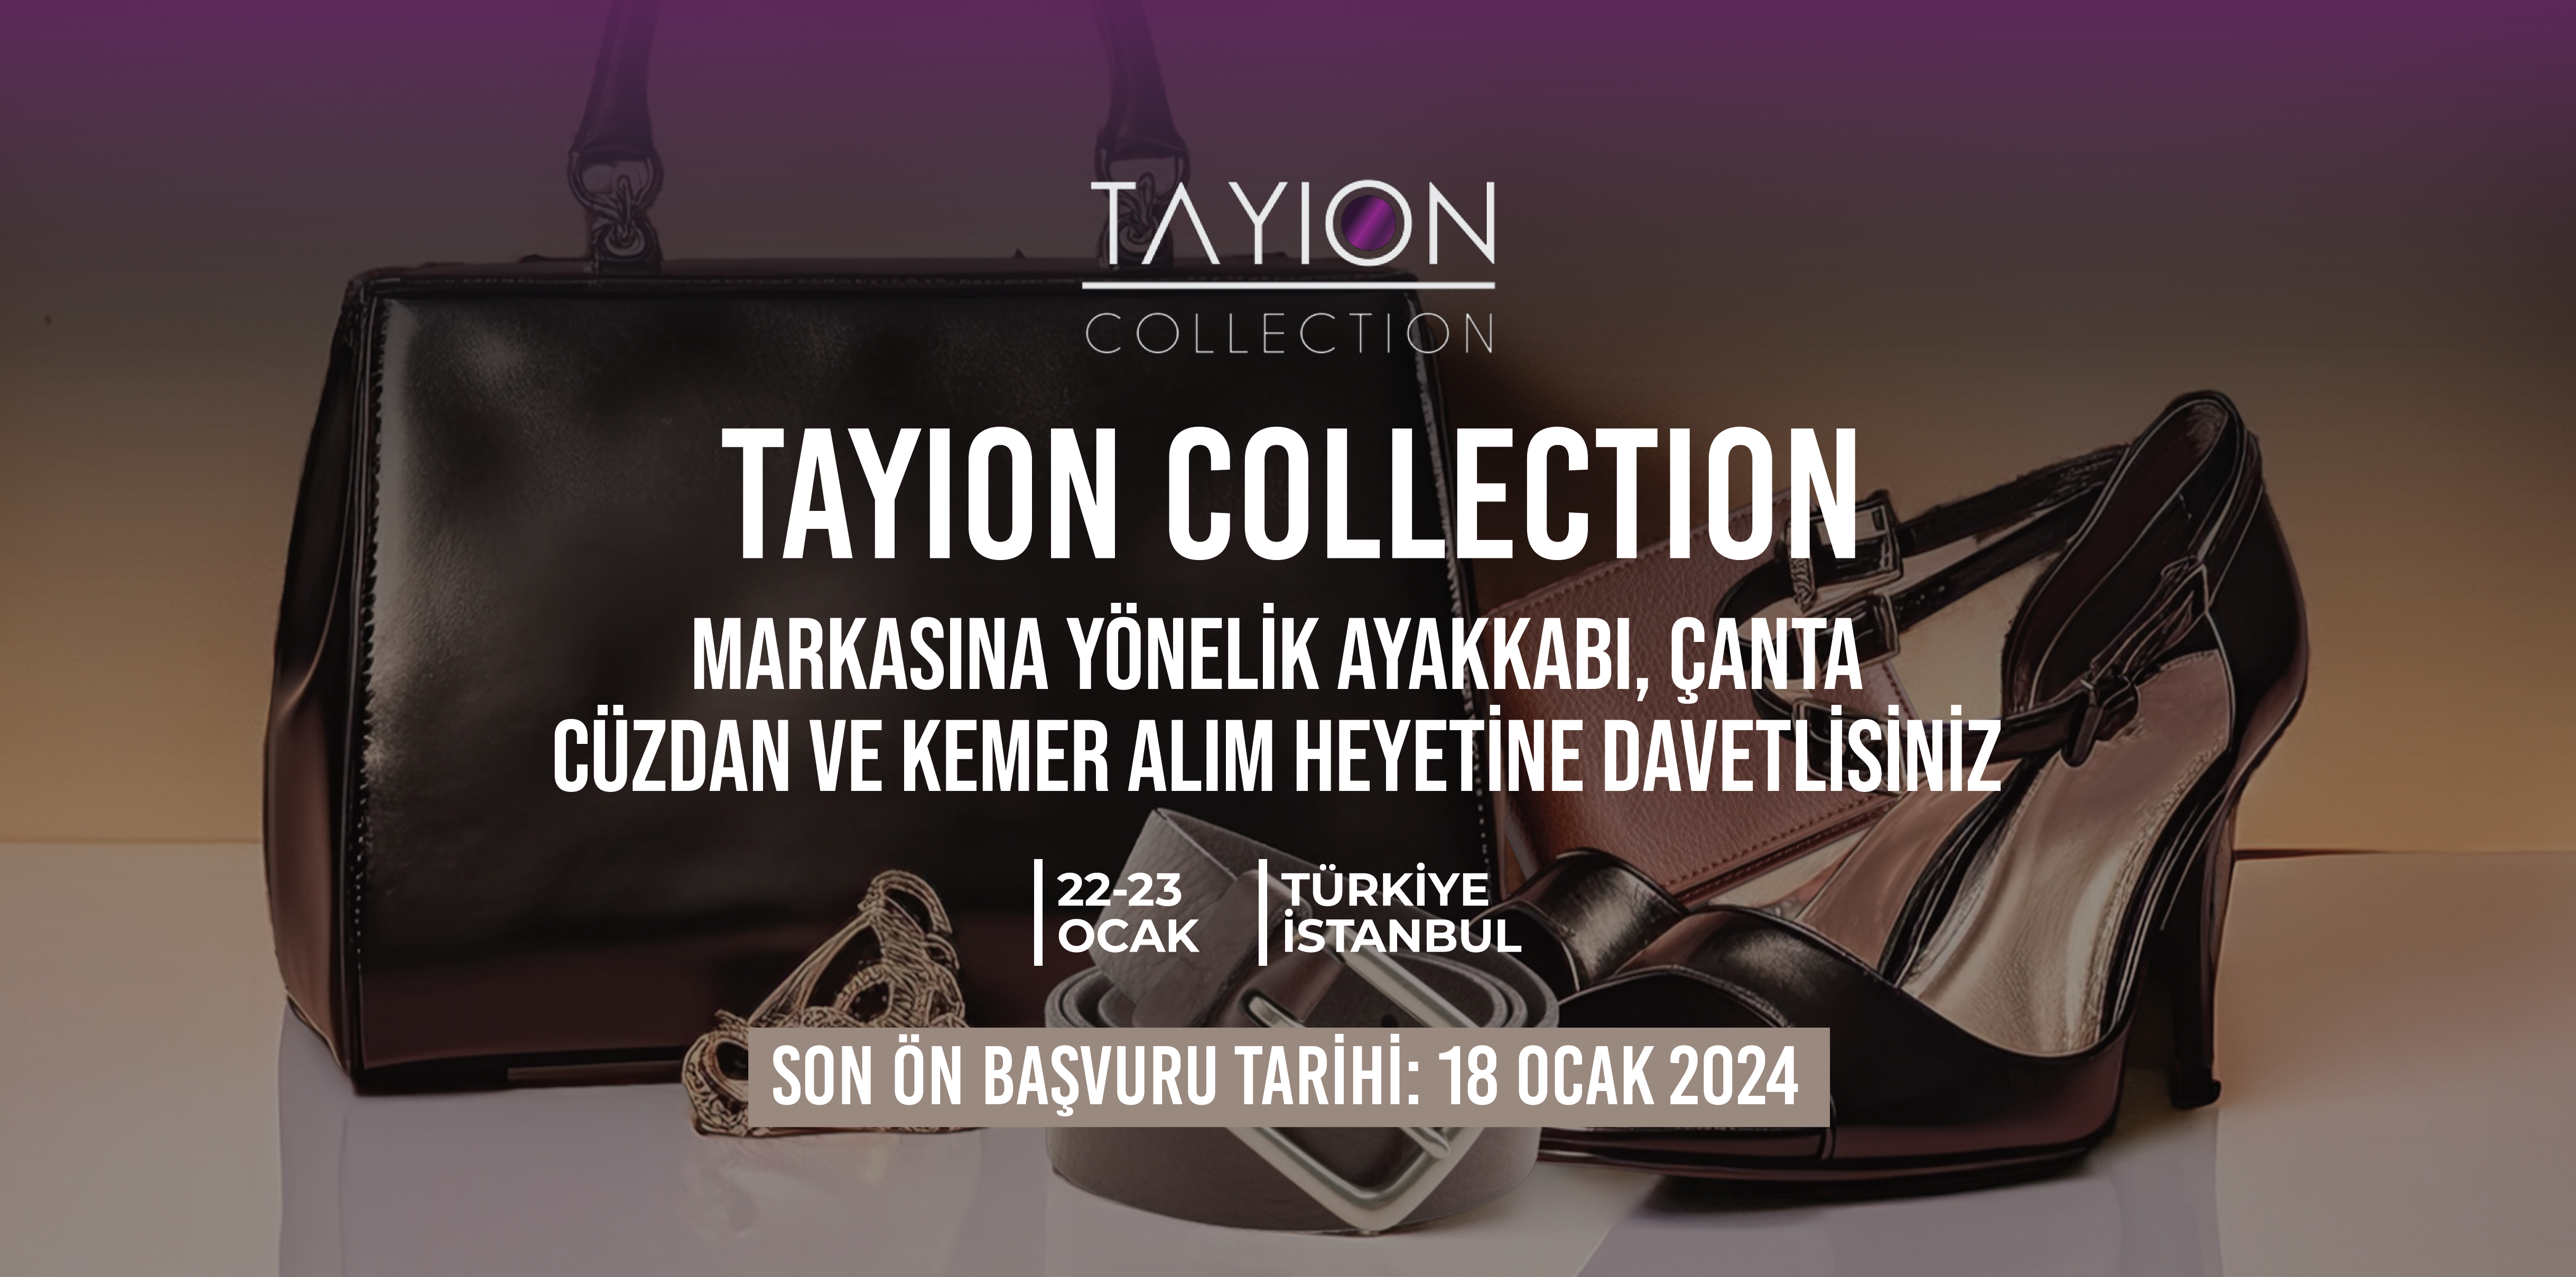 Tayion Collection Firmasına Yönelik Ayakkabı, Çanta, Kemer ve Cüzdan Özel Nitelikli Alım Heyeti